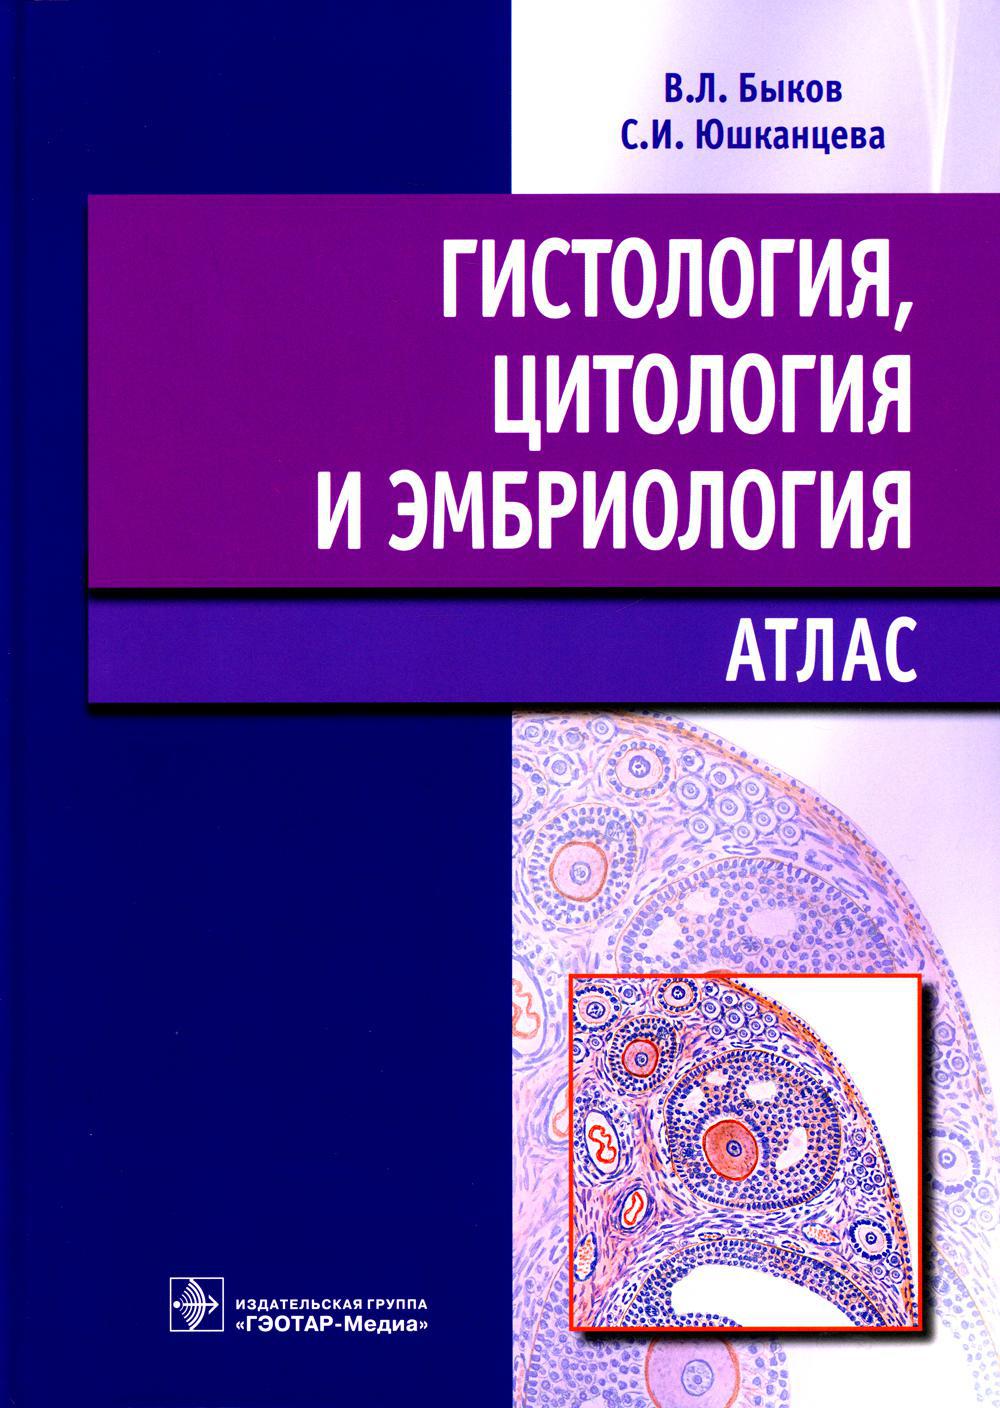 Гистология, цитология и эмбриология: атлас: учебное пособие